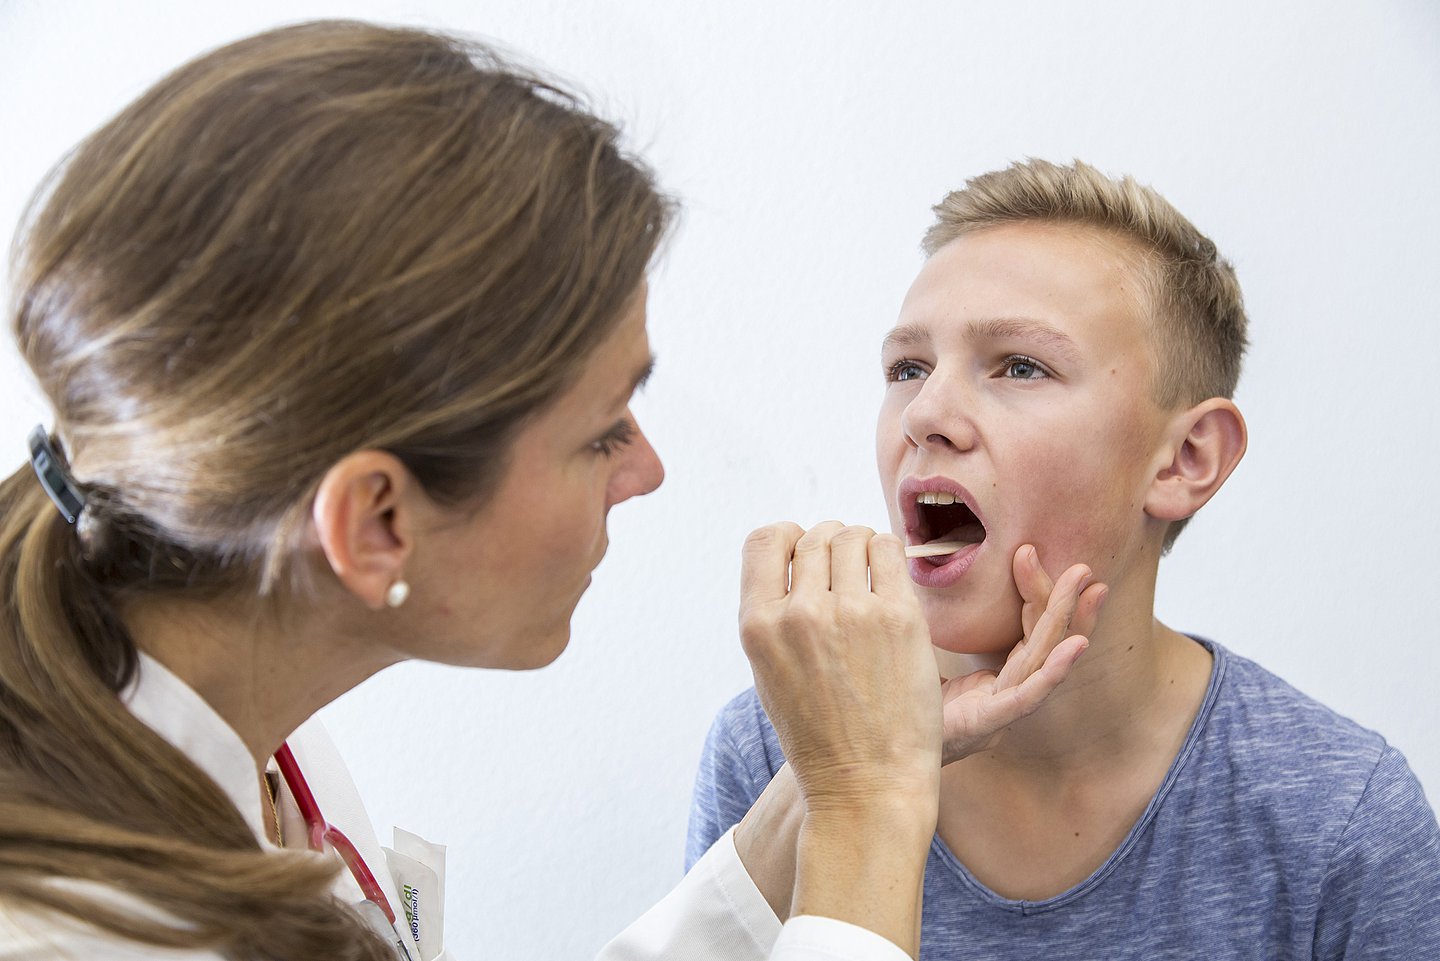 Foto: Eine Ärztin untersucht den Rachen eines Jungen mit einem Stäbchen.